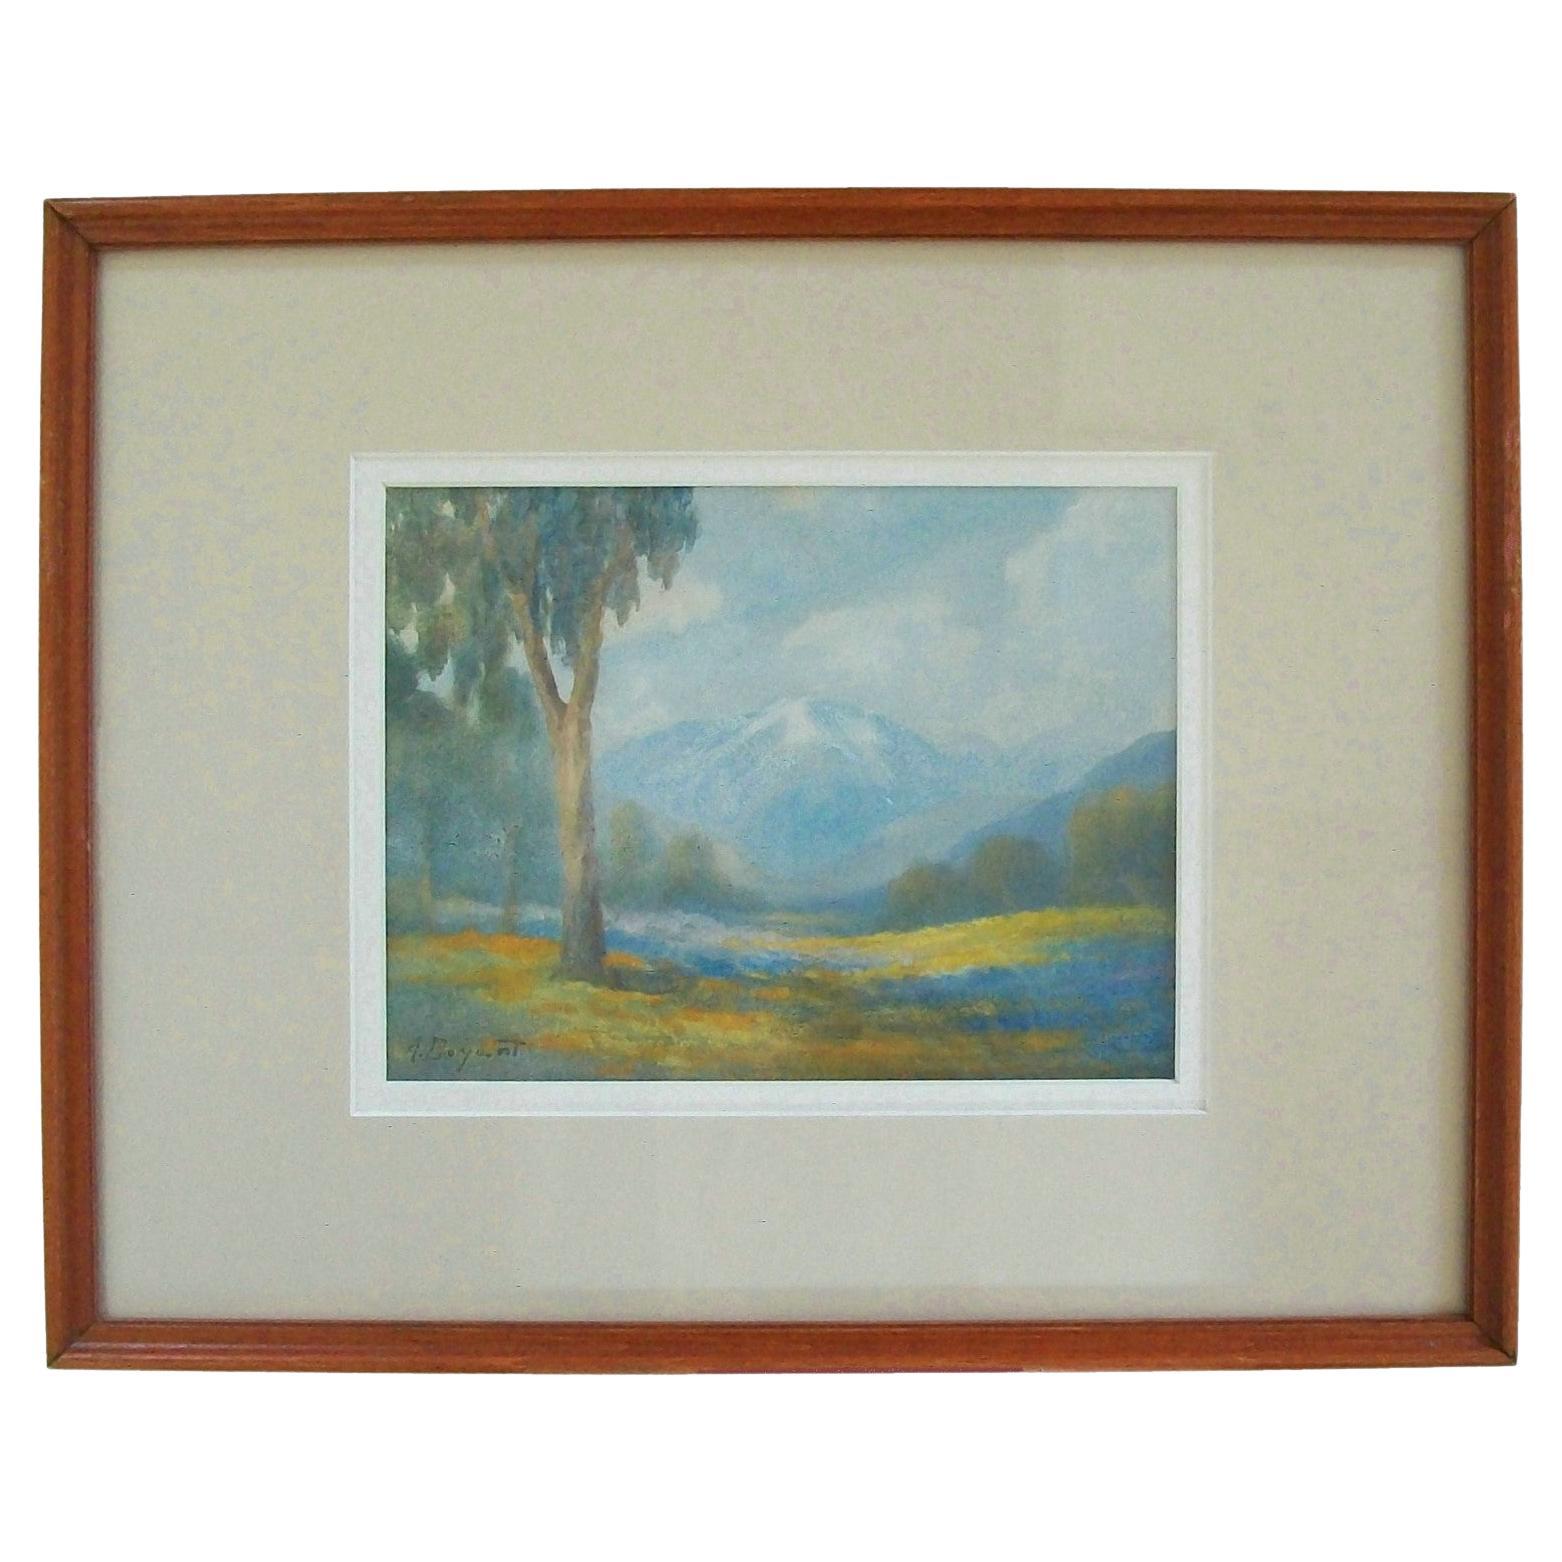 ALICE D. BRYANT - Peinture à l'aquarelle impressionniste californienne - vers 1920